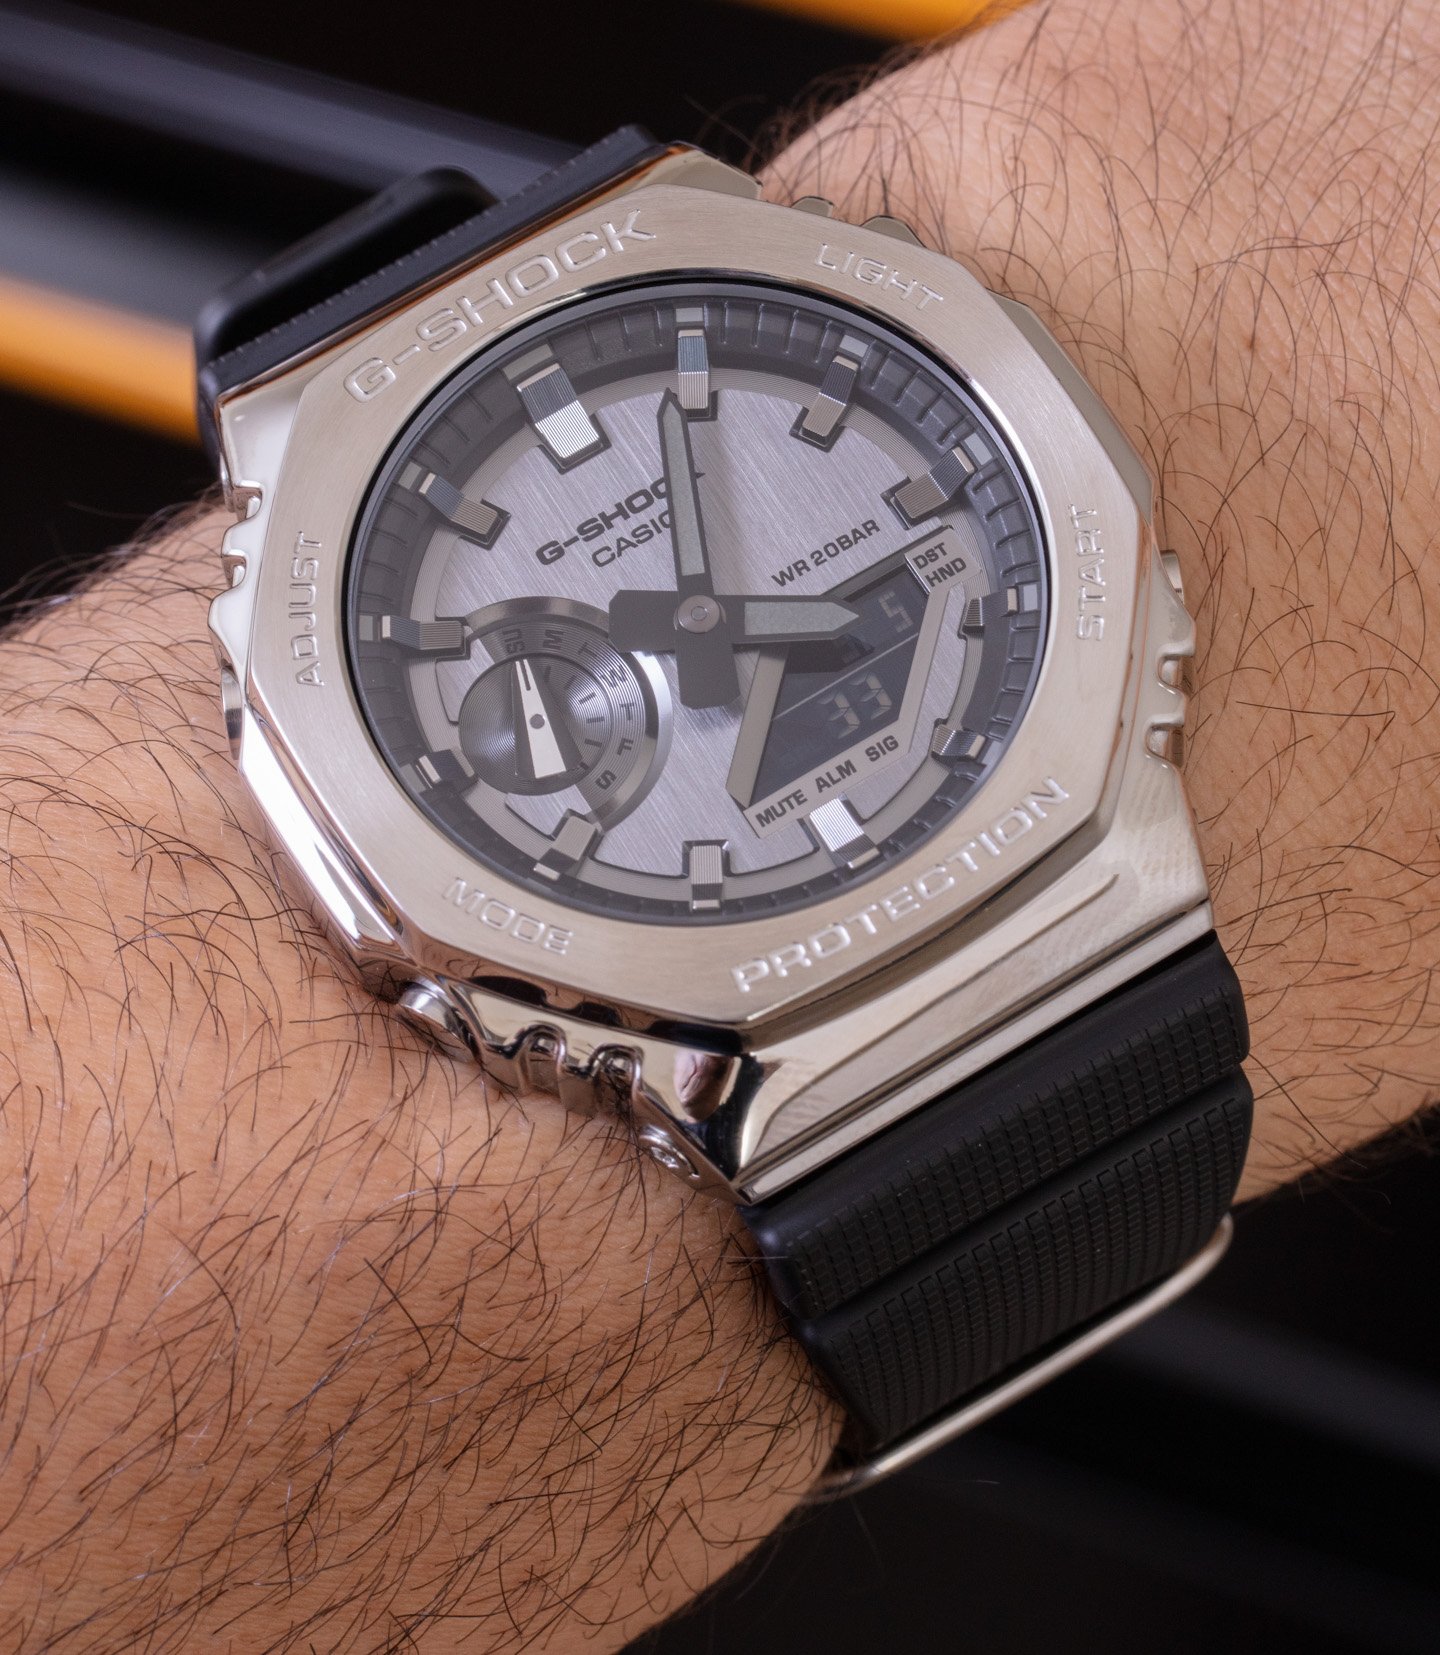 Наручные часы: Casio G-Shock GM2100 и GMS2100